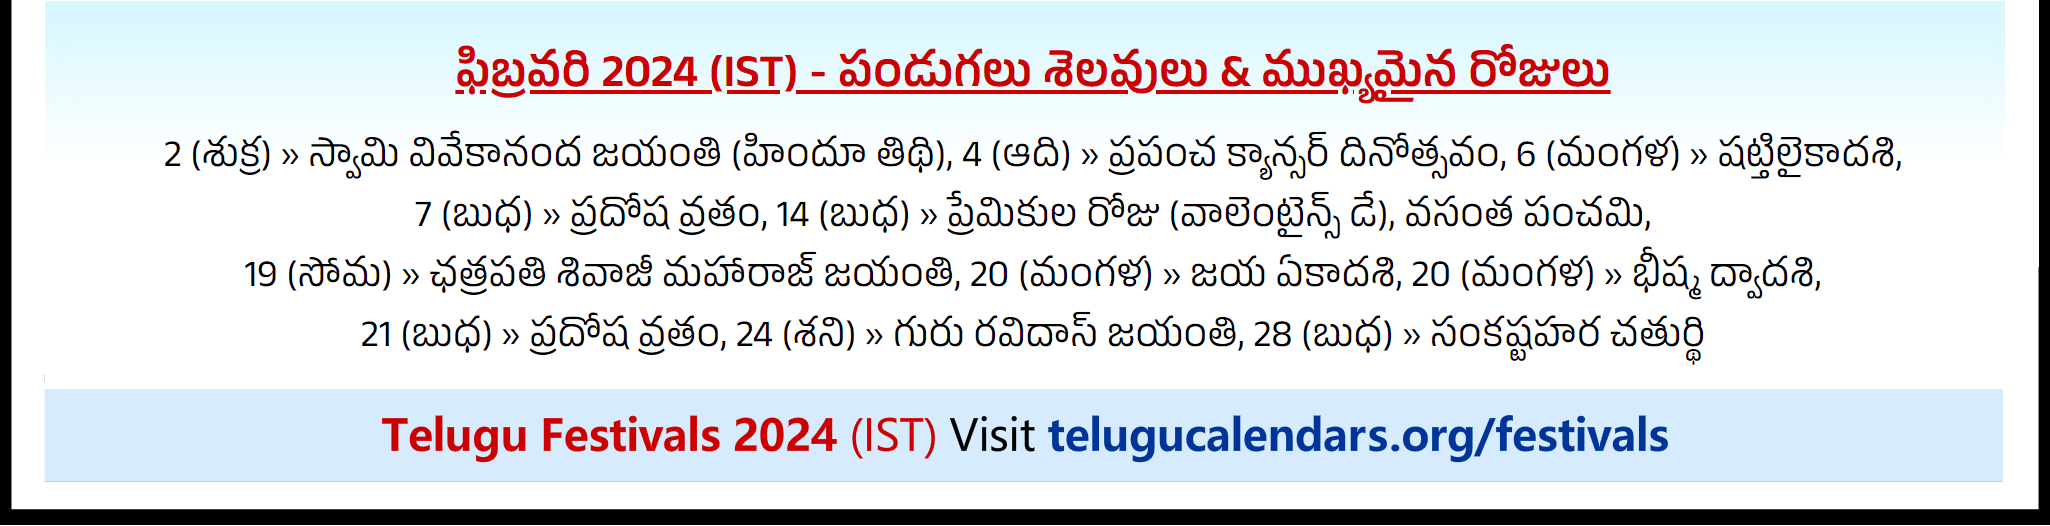 Telugu Festivals 2024 February Sydney